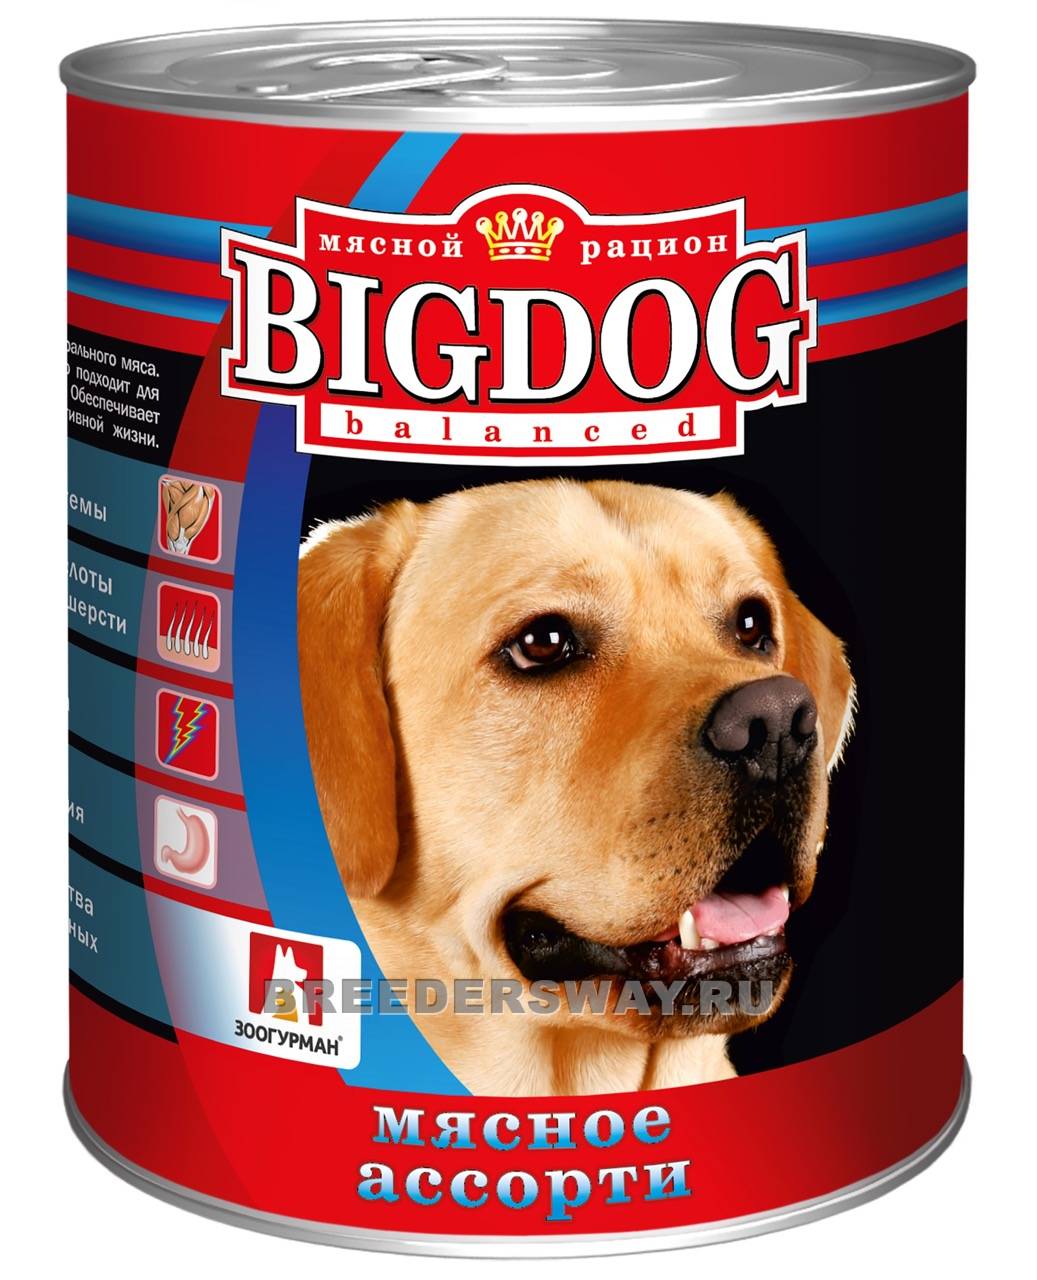 BIG DOG Мясное ассорти ж/б 850гр